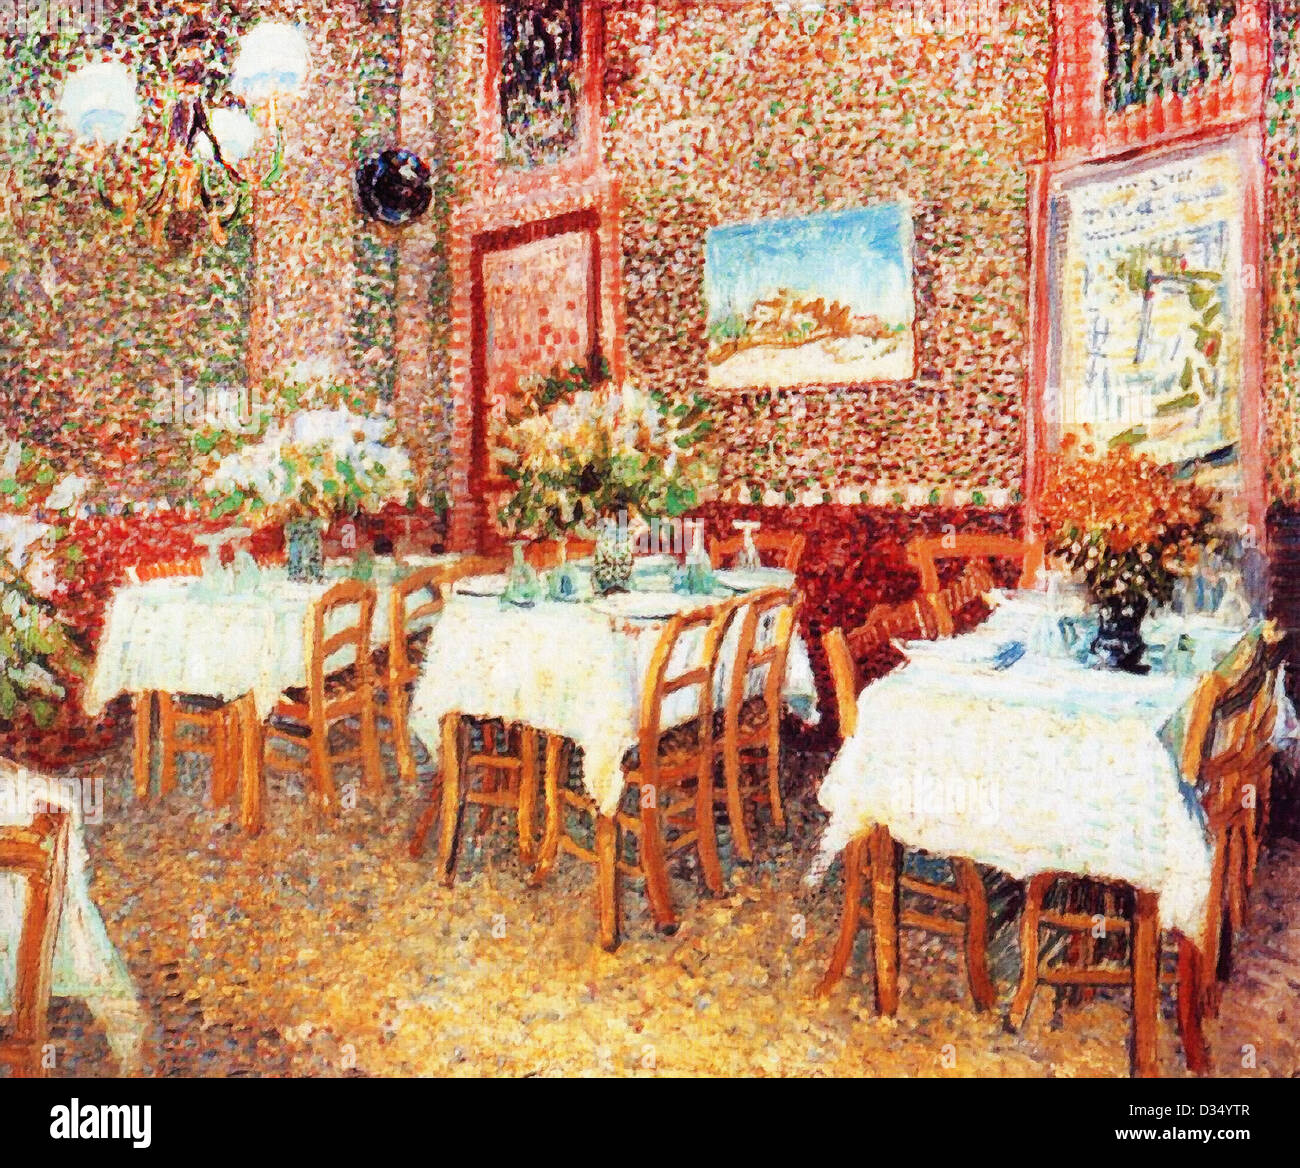 Vincent Van Gogh, Innenraum eines Restaurants. 1887. Post-Impressionismus. Öl auf Leinwand. Rijksmuseum Kröller-Müller, Otterlo Stockfoto